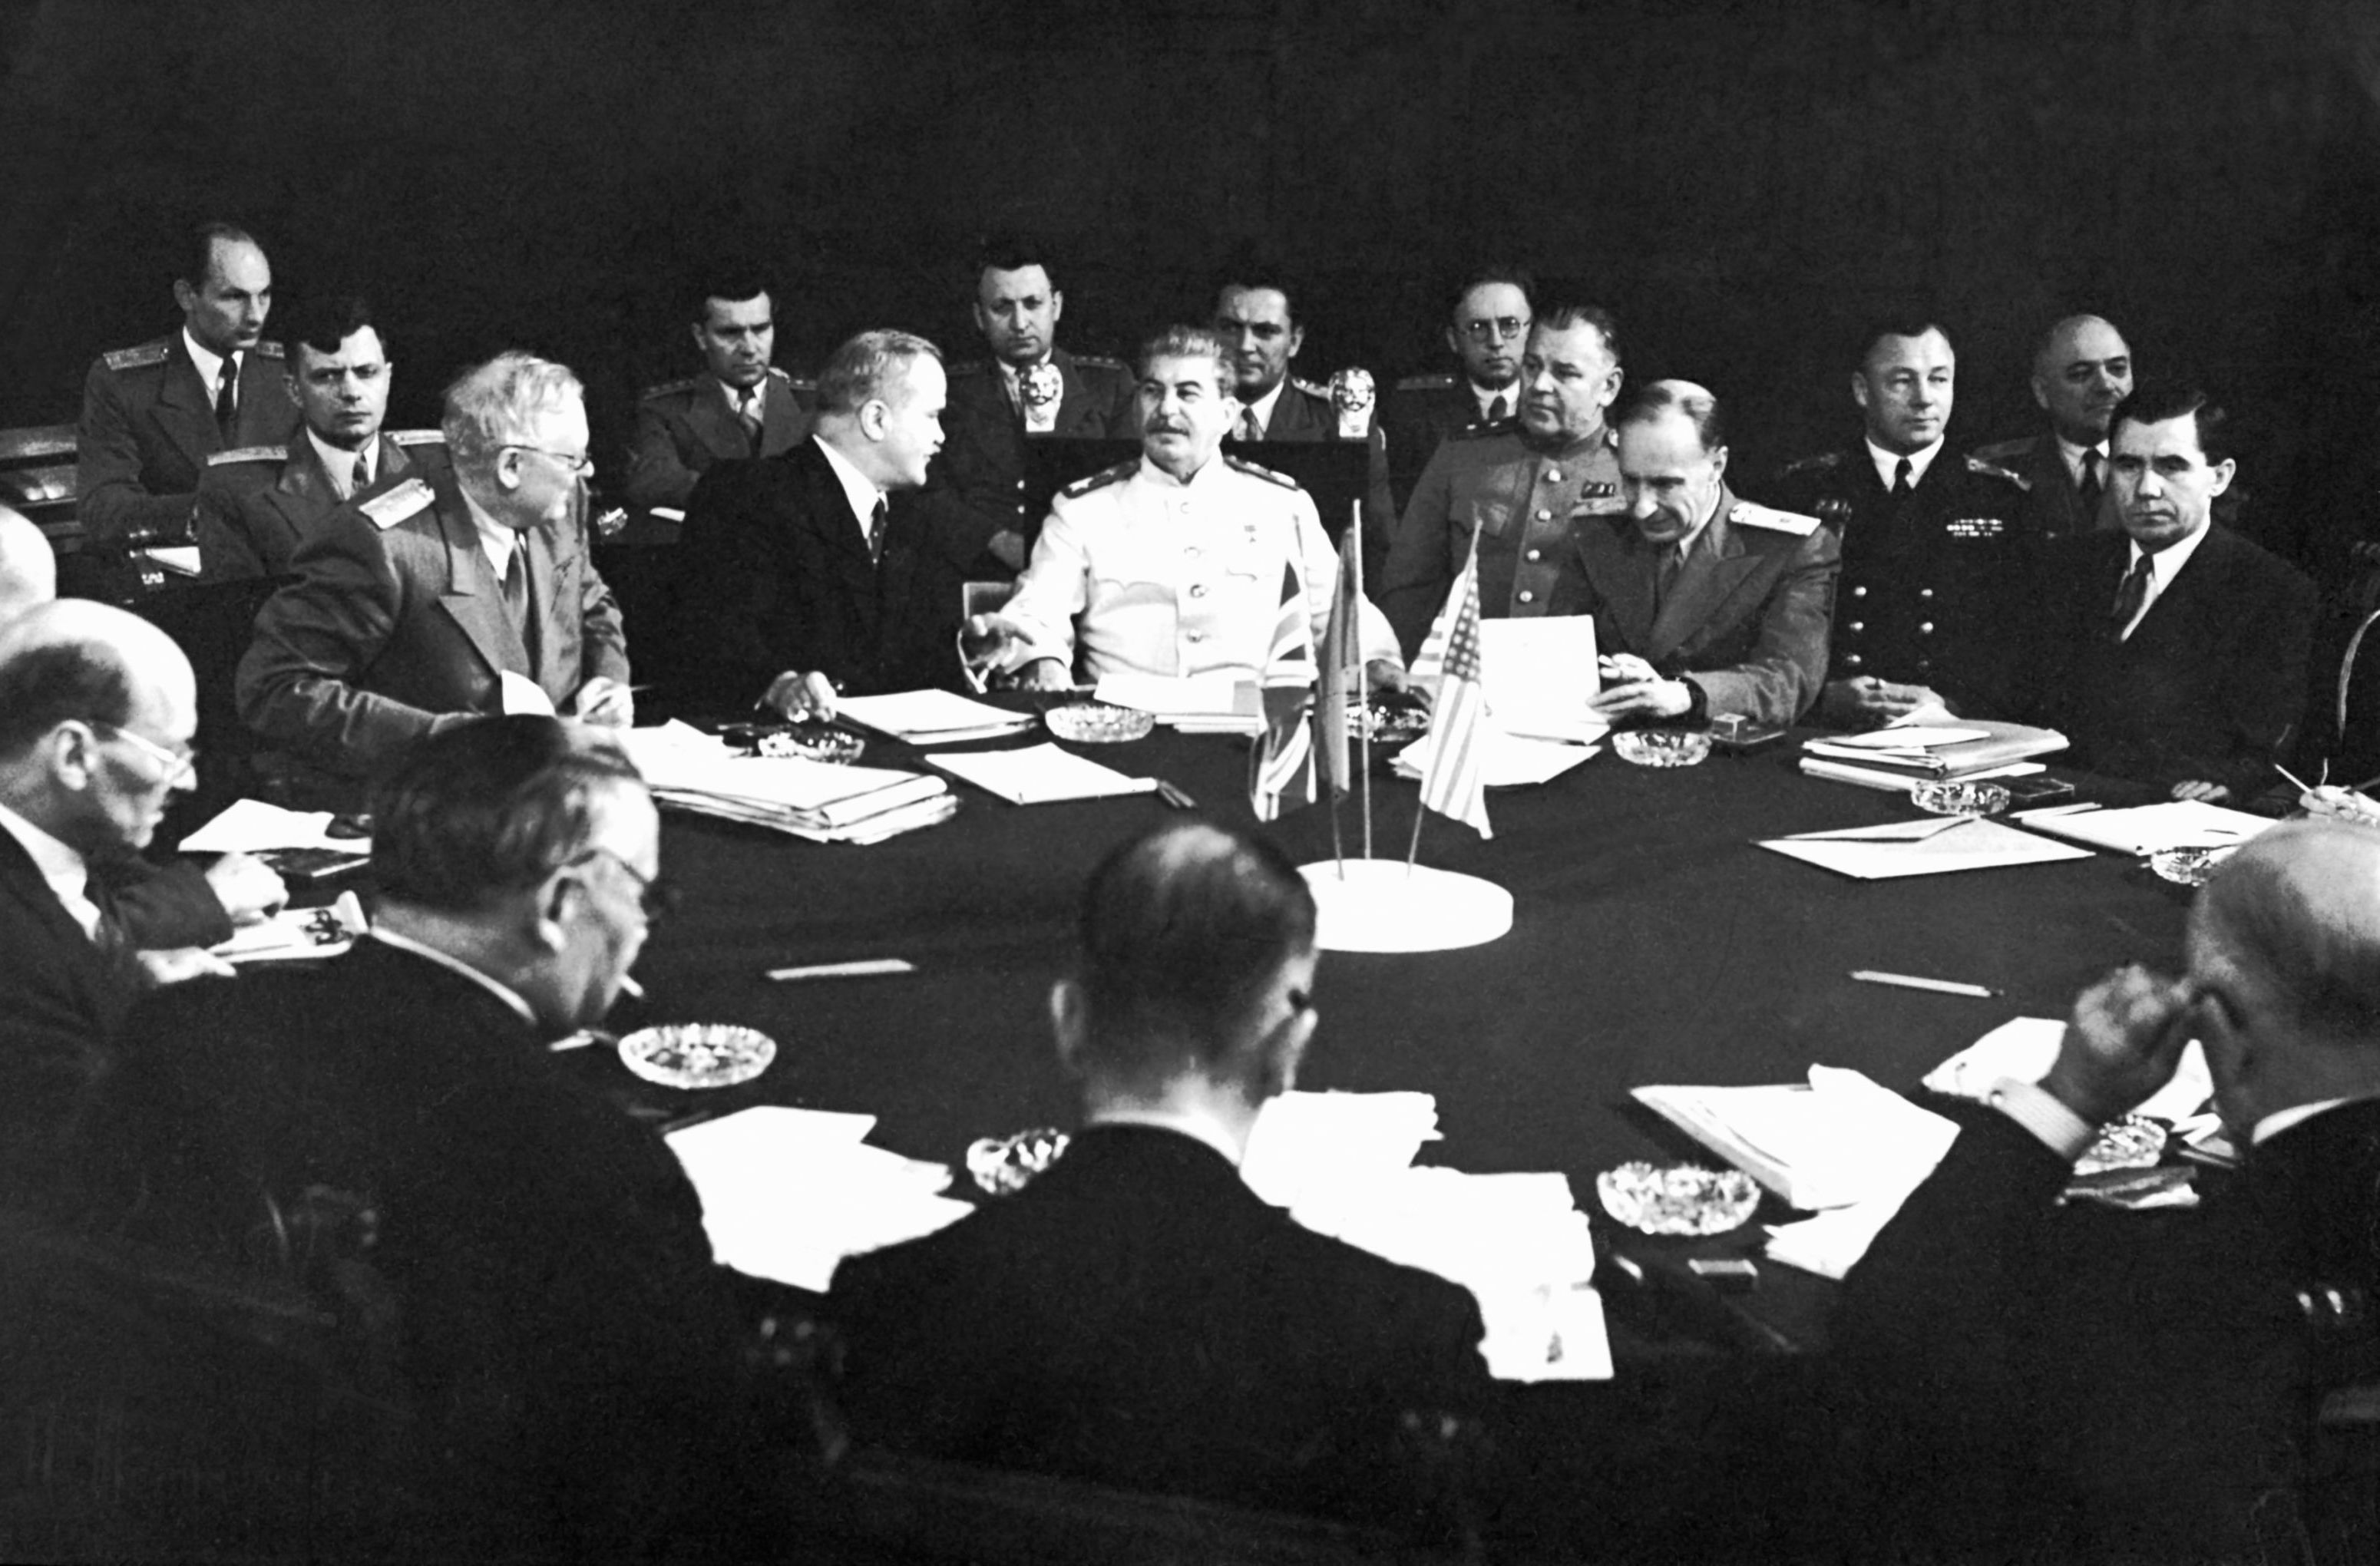 Участники советской делегации во время заседания Потсдамской конференции - встречи глав СССР, США и Великобритании в Потсдаме